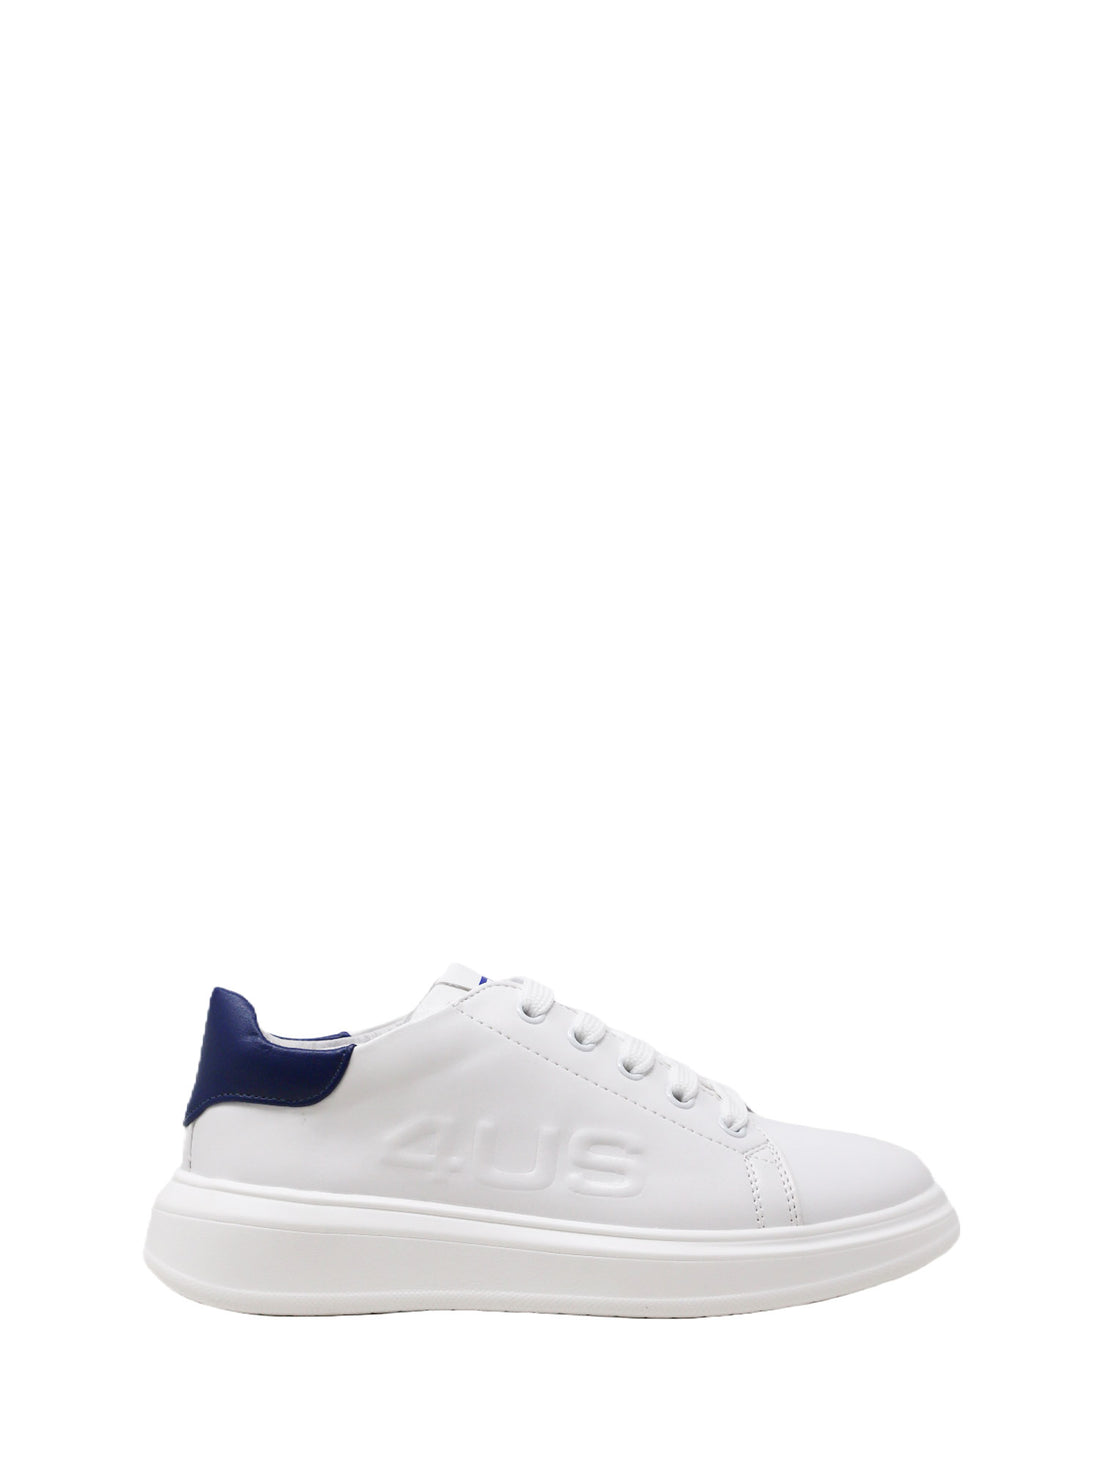 Sneakers Bianco Blu 4us